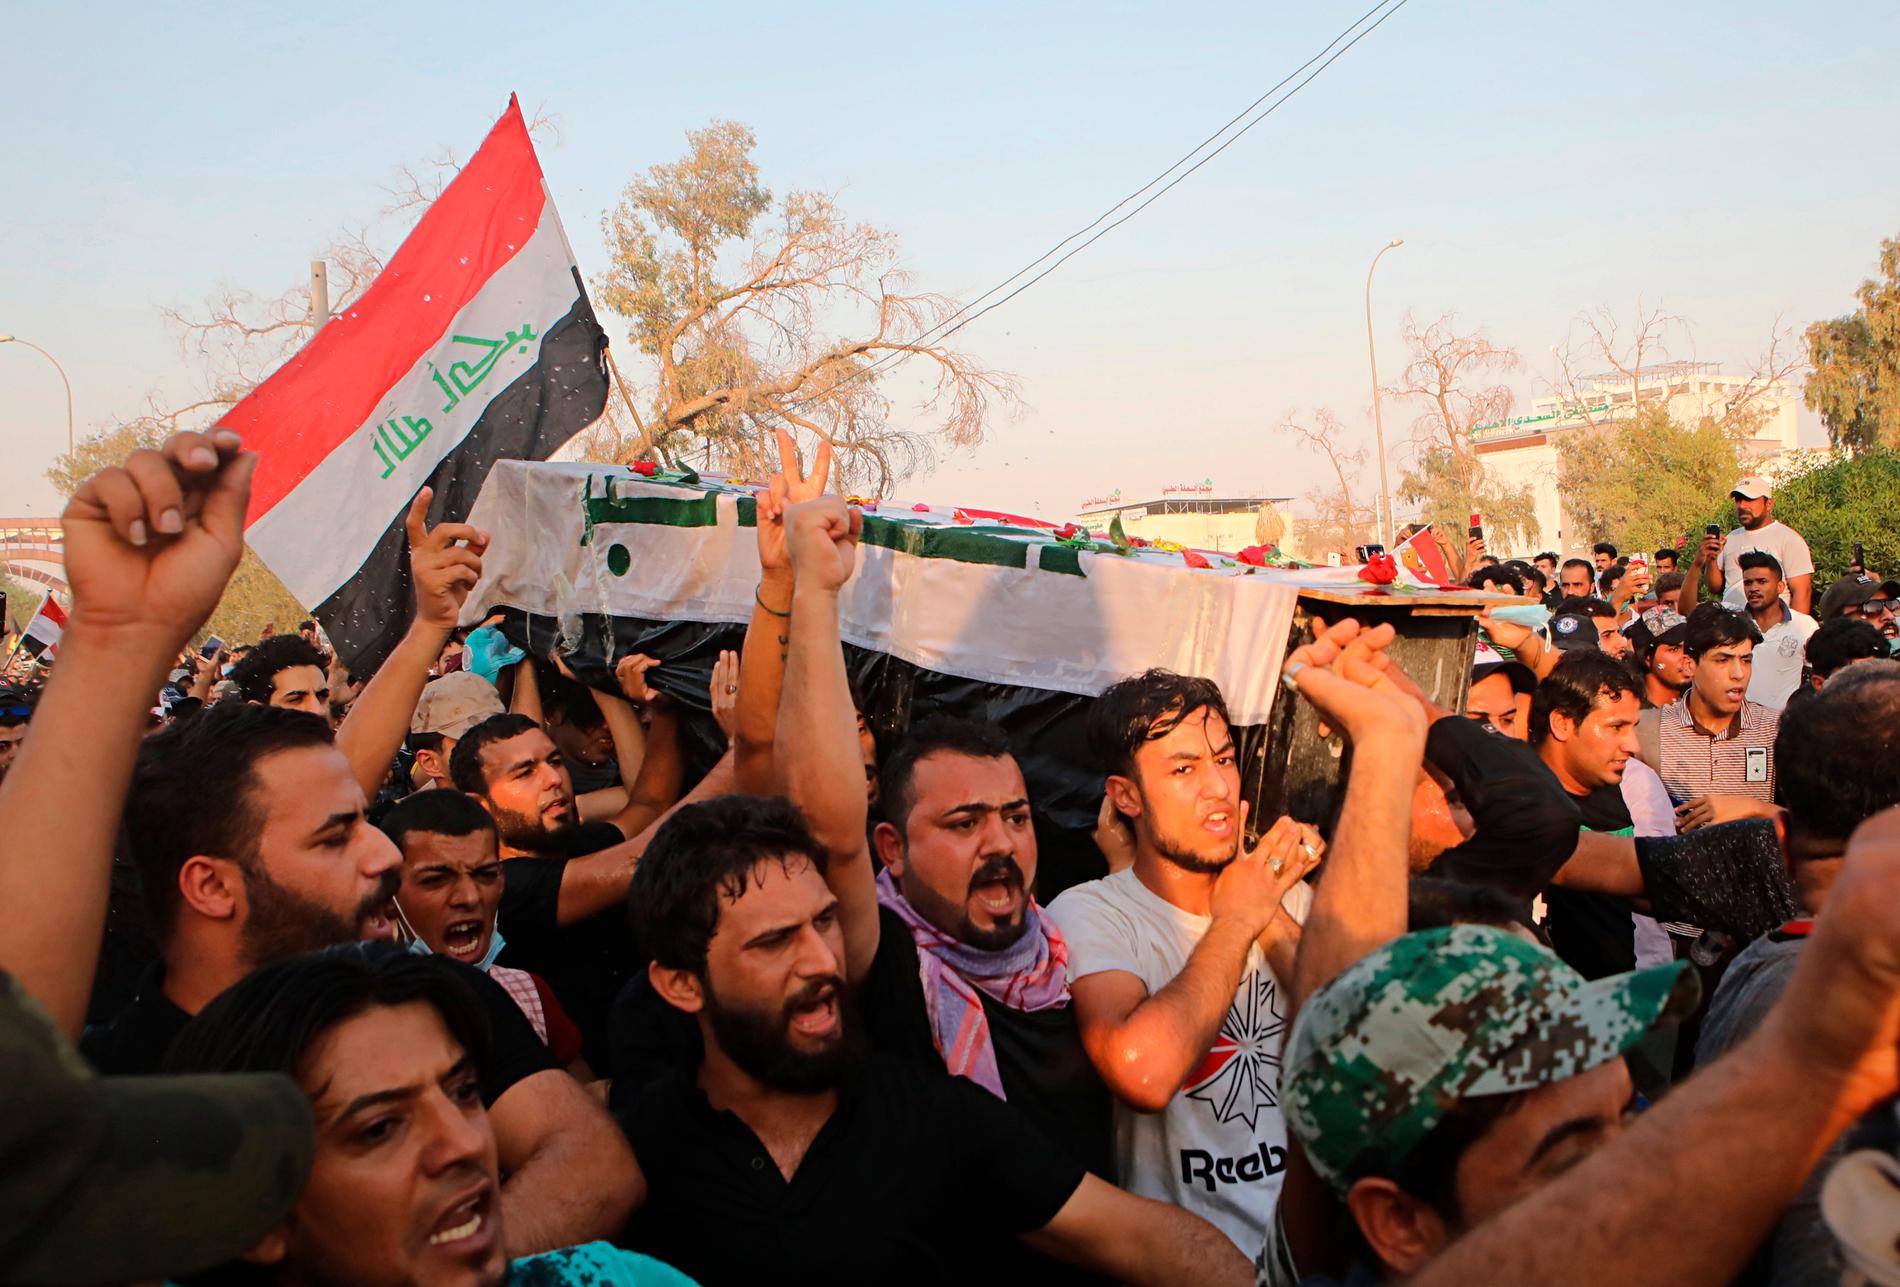 Demonstranter skanderar regeringskritiska slogans samtidigt som de bär kistan med kvarlevorna efter en aktivist som dödades i veckans sammandrabbningar i Basra i Irak.